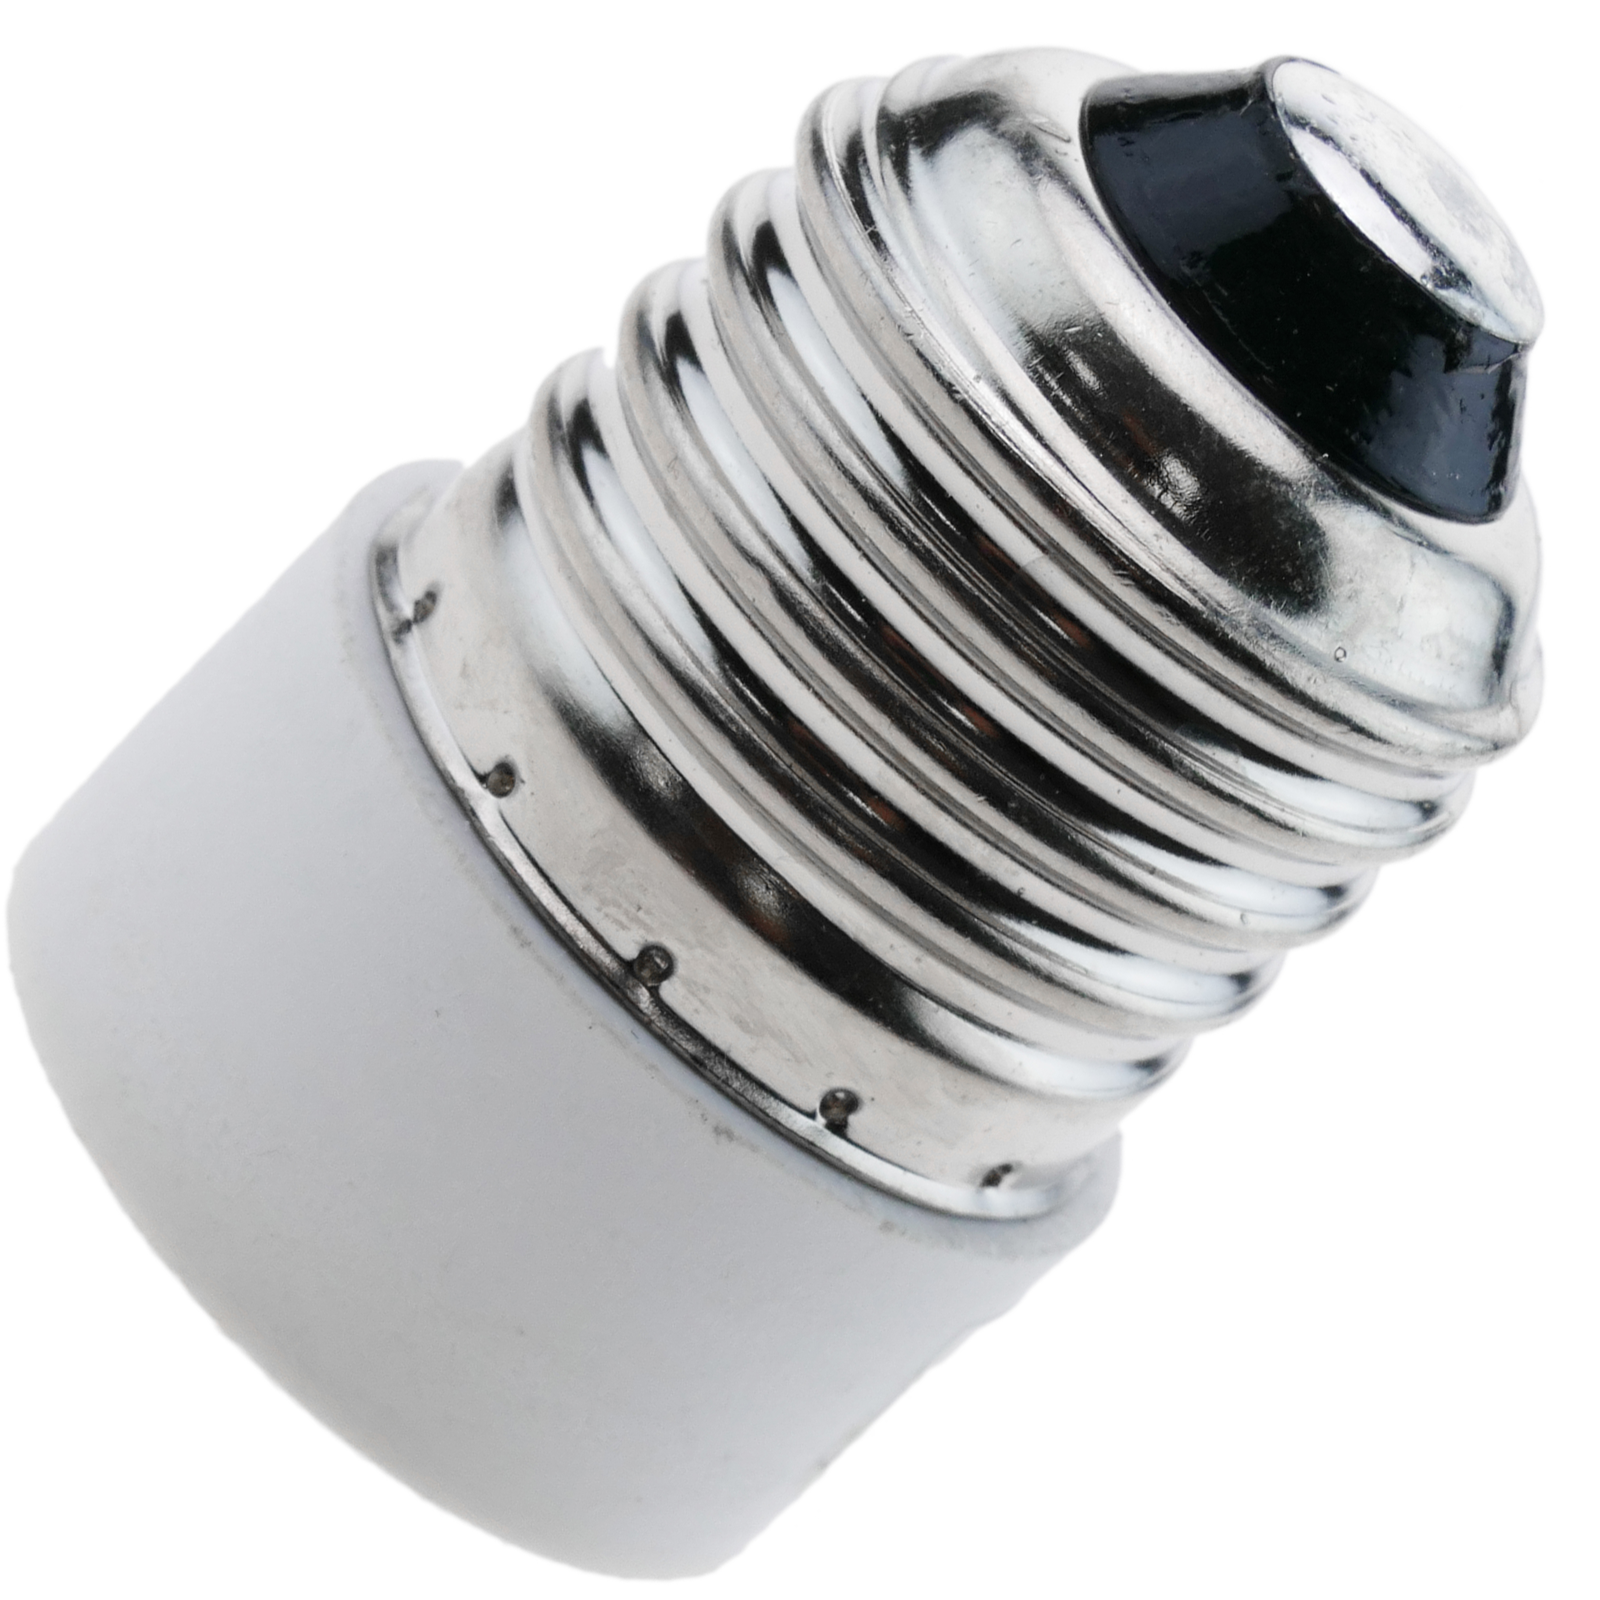 Hsthe Sea 5x Convertisseur de douille E14 à E27 Adaptateur de douille de lampe Adaptateur de lampe pour lampes et ampoules LED et Lampes fluocompactes Base de lampe Convertisseur d'adaptateur 